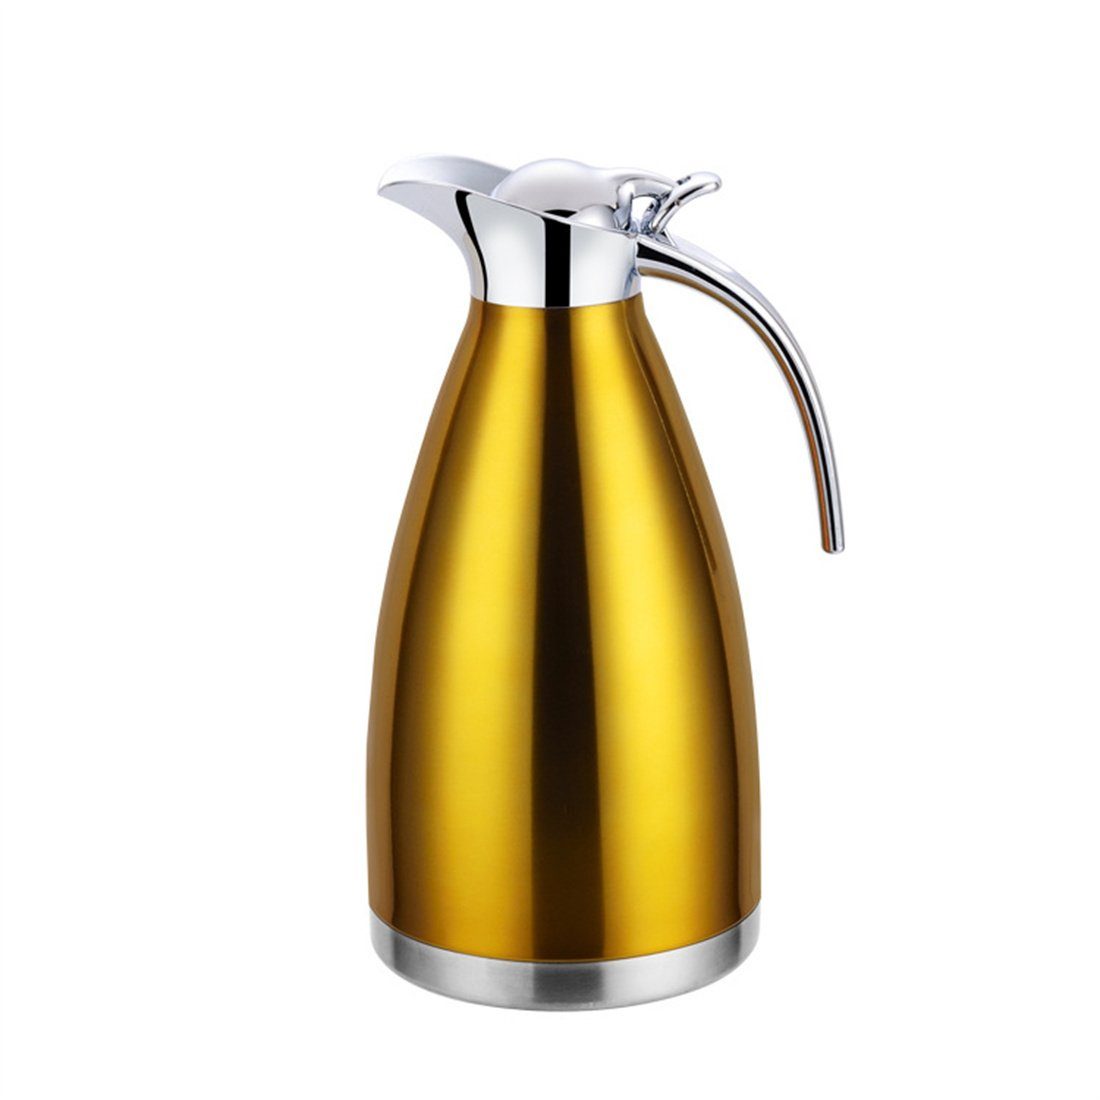 DÖRÖY Isolierkanne Isolierter Edelstahl-Wasserkocher, 2.0L Kaffeekanne Gold Heißwasserkocher